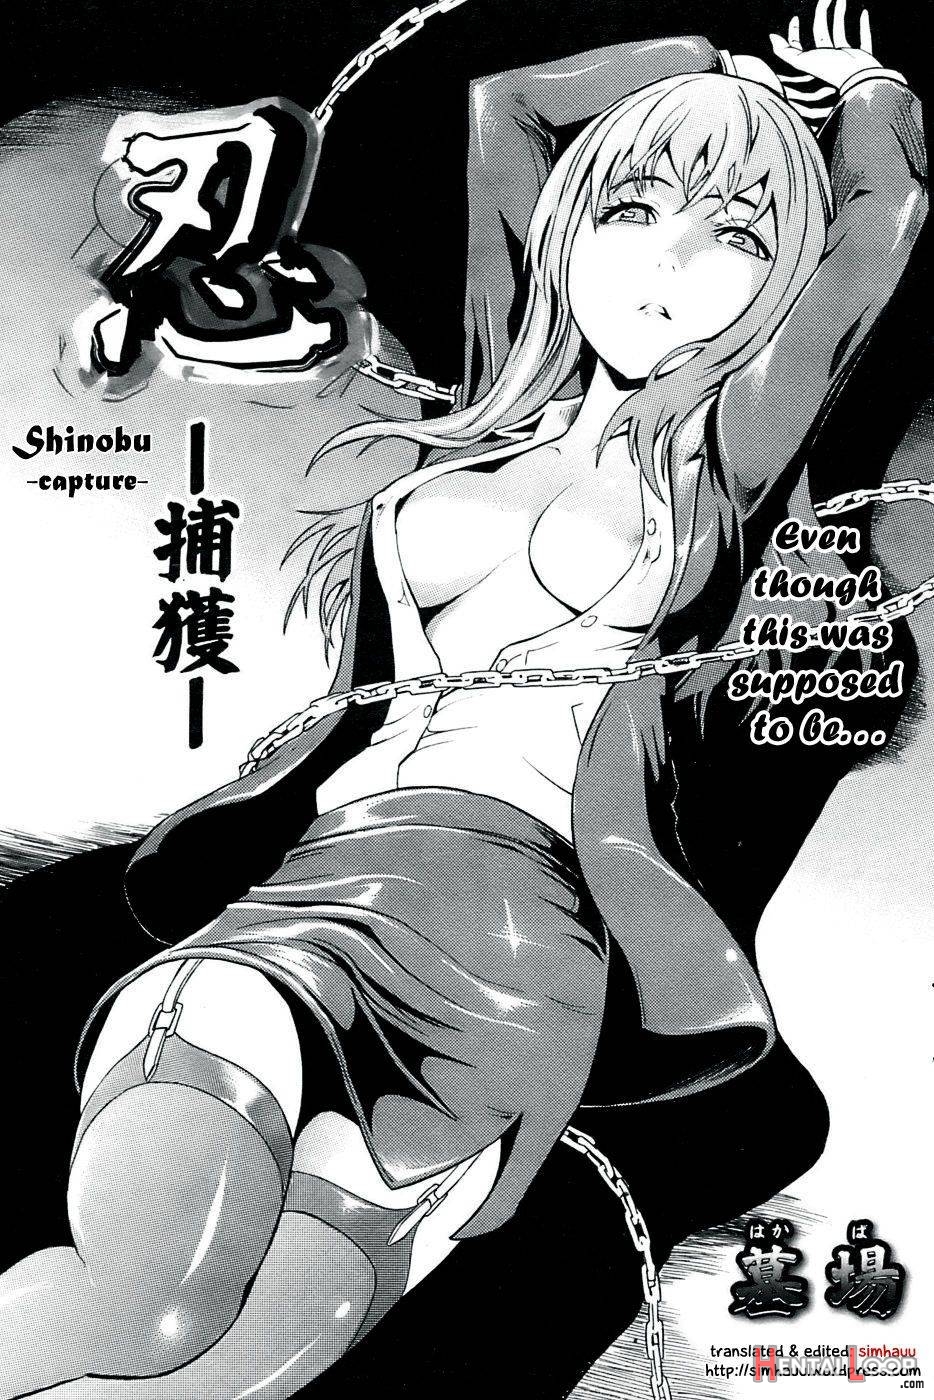 Shinobu page 3